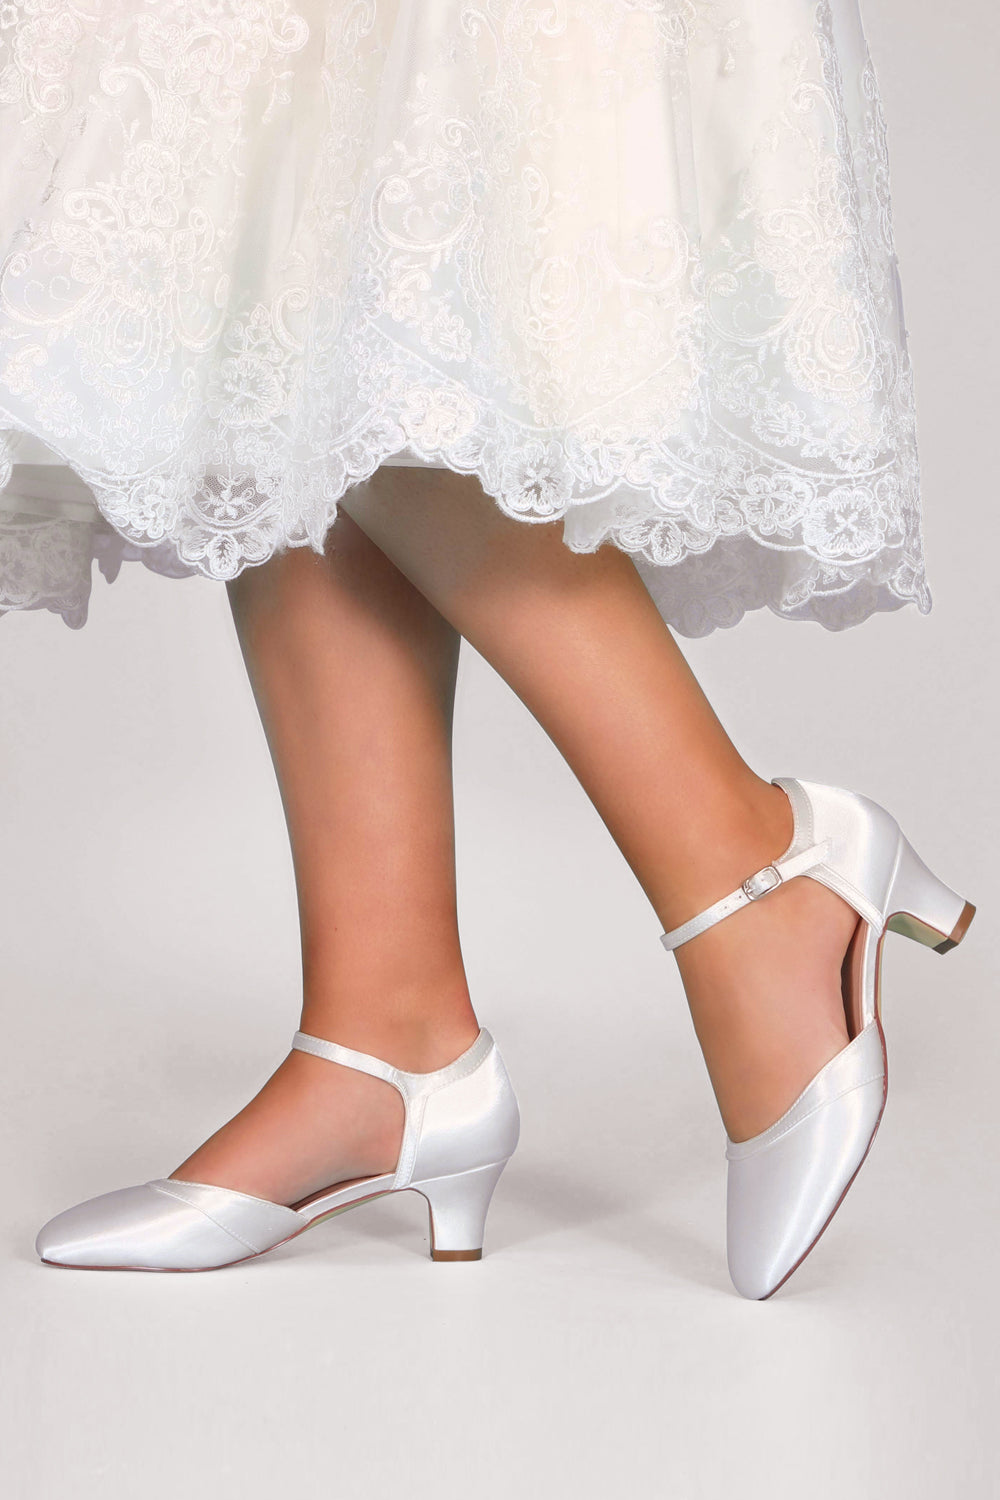 Ingrid ivory round toe wedding shoes